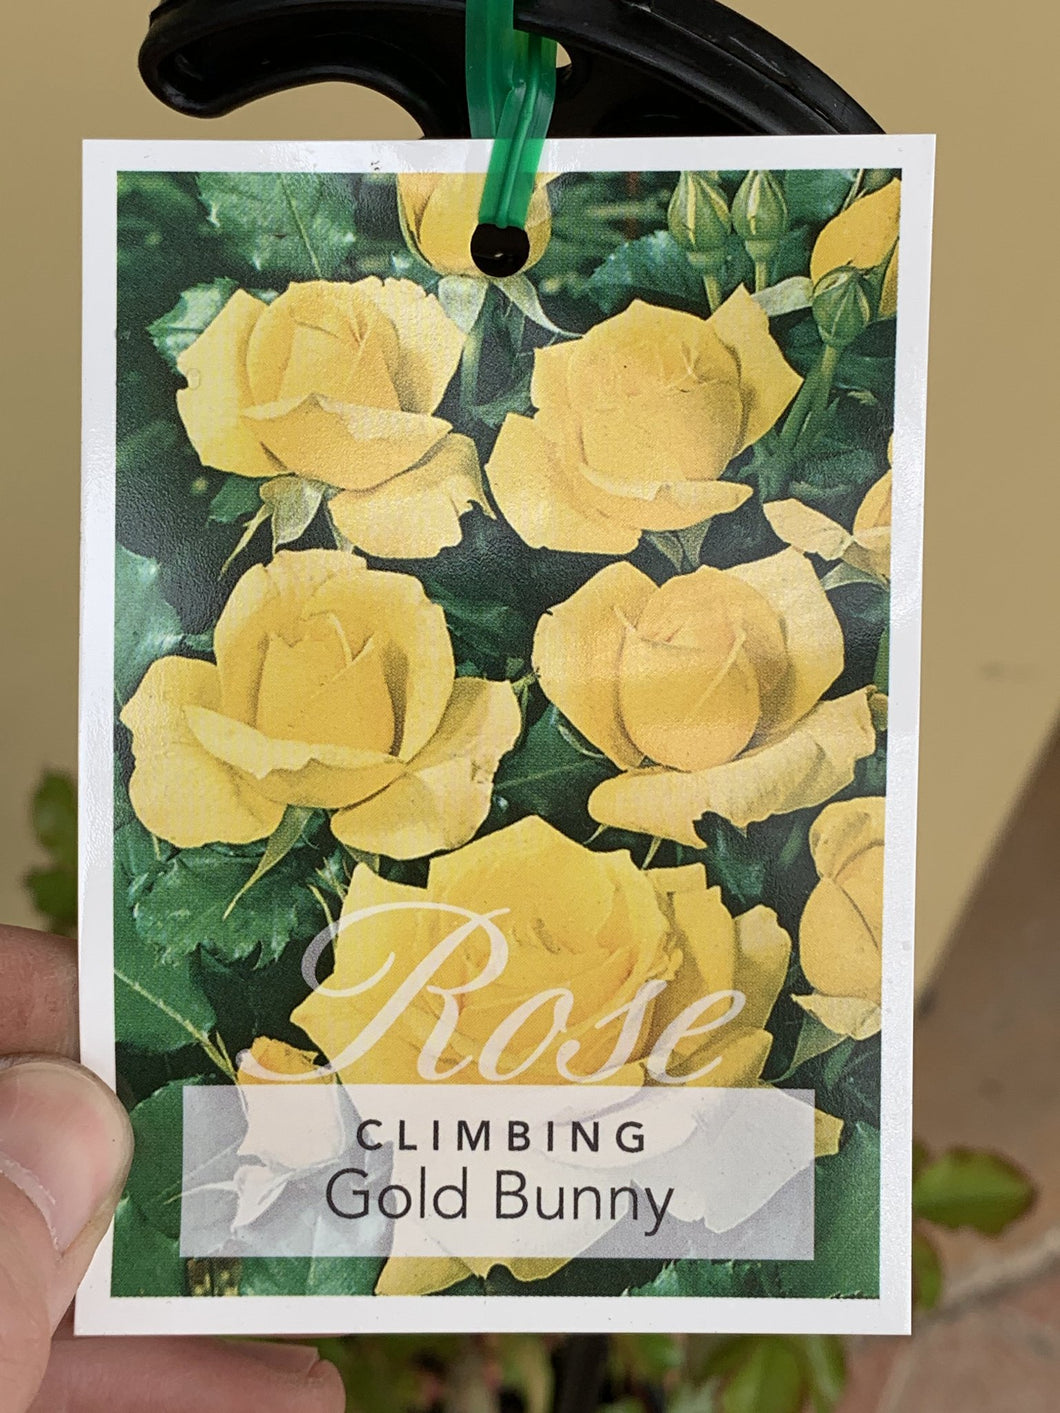 Rose - Climbing 'Gold Bunny'